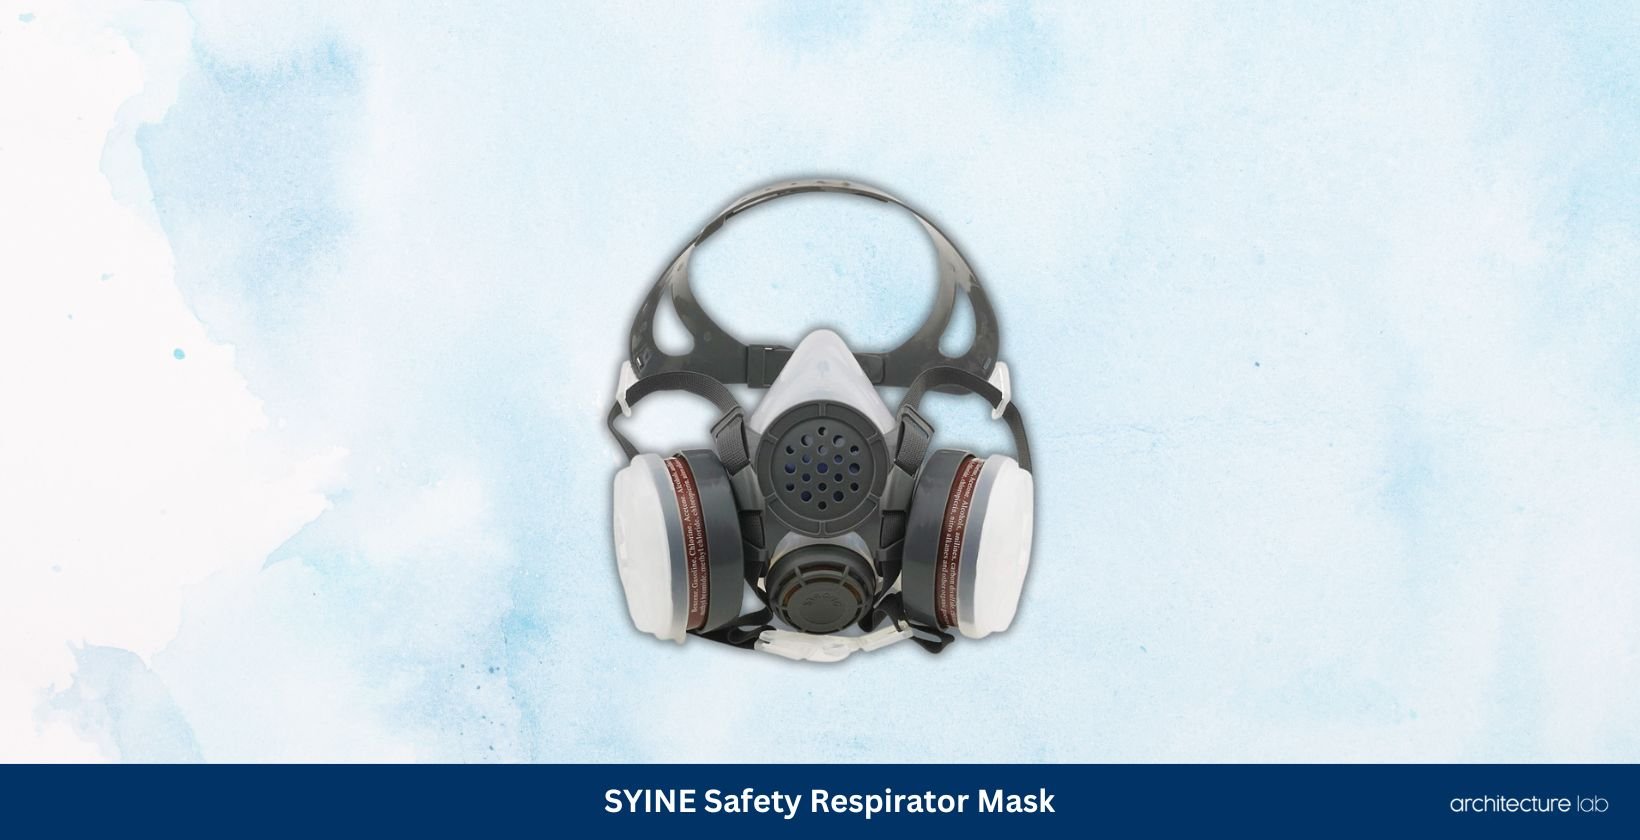 Syine safety respirator mask